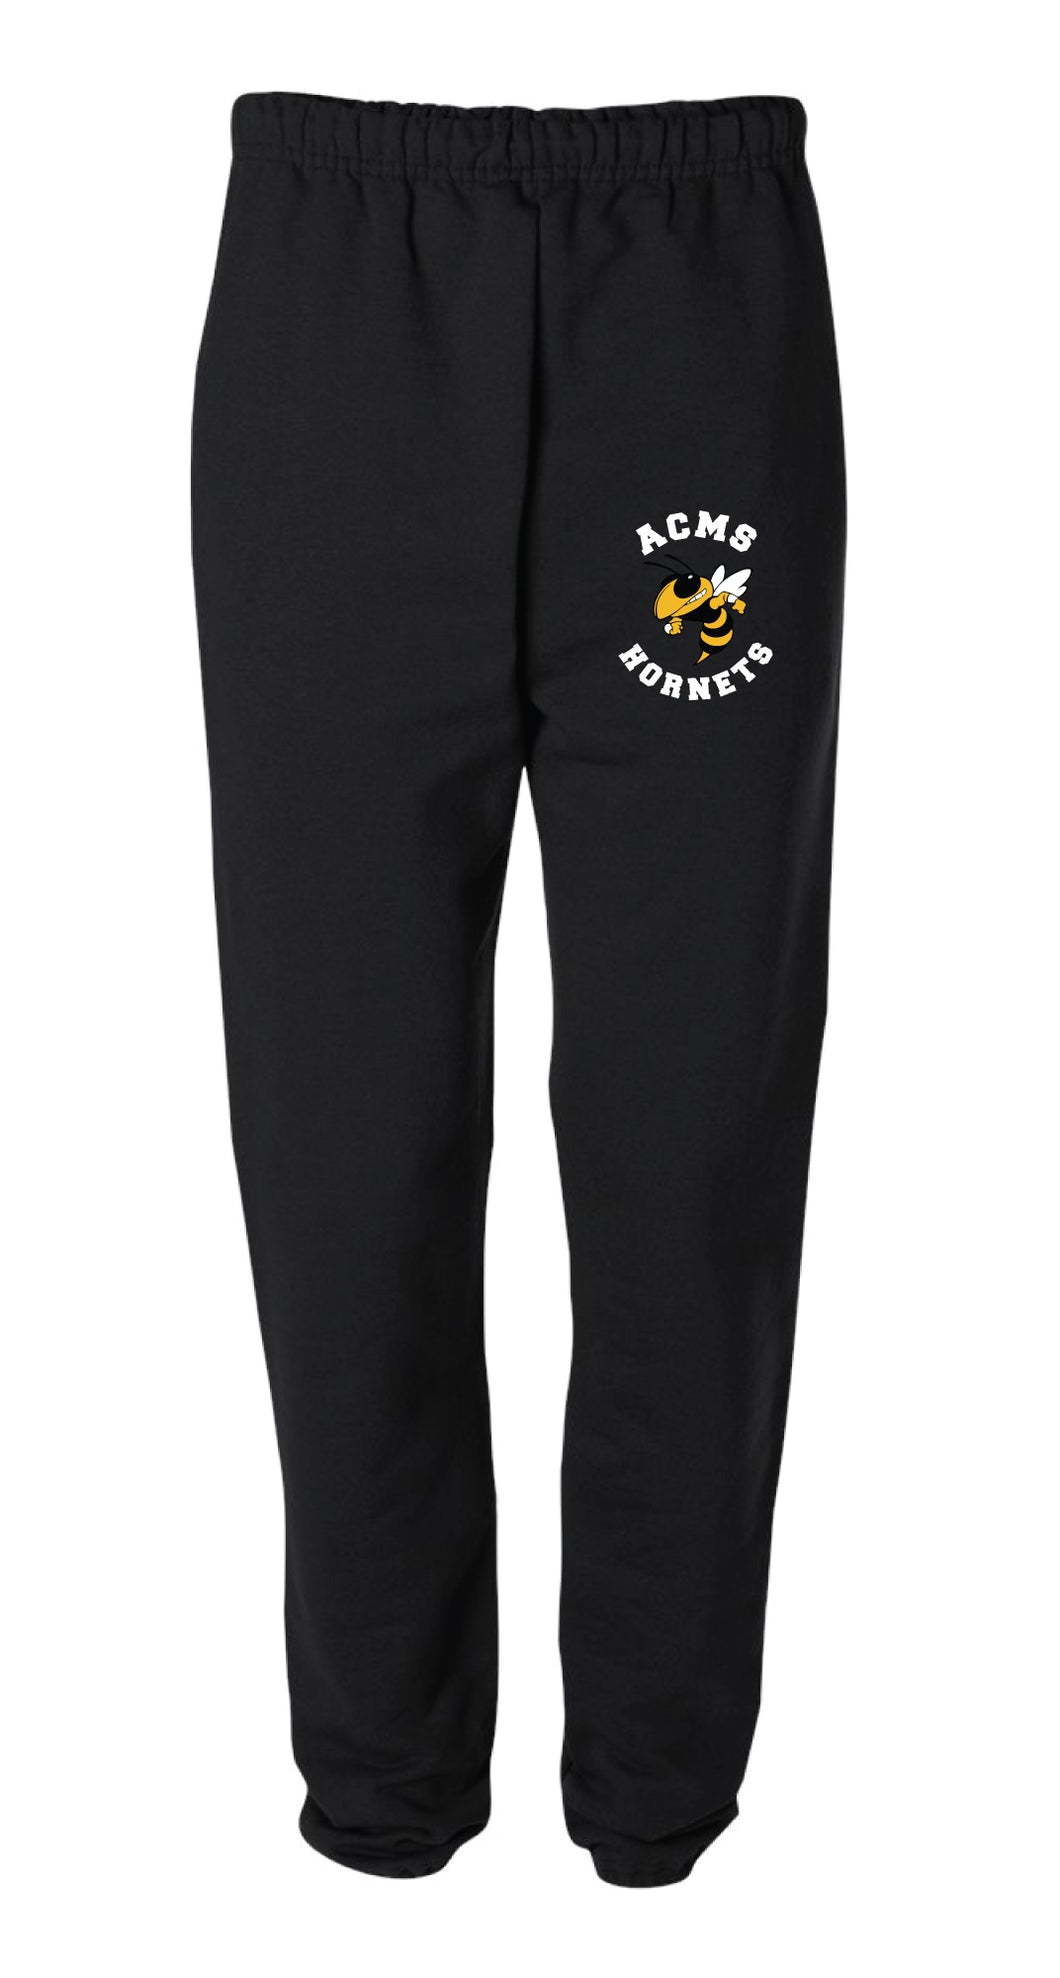 Anne Chesnutt Hornets Cotton Sweatpants - Black (Does Not Meet School Uniform Requirements) - 5KounT2018